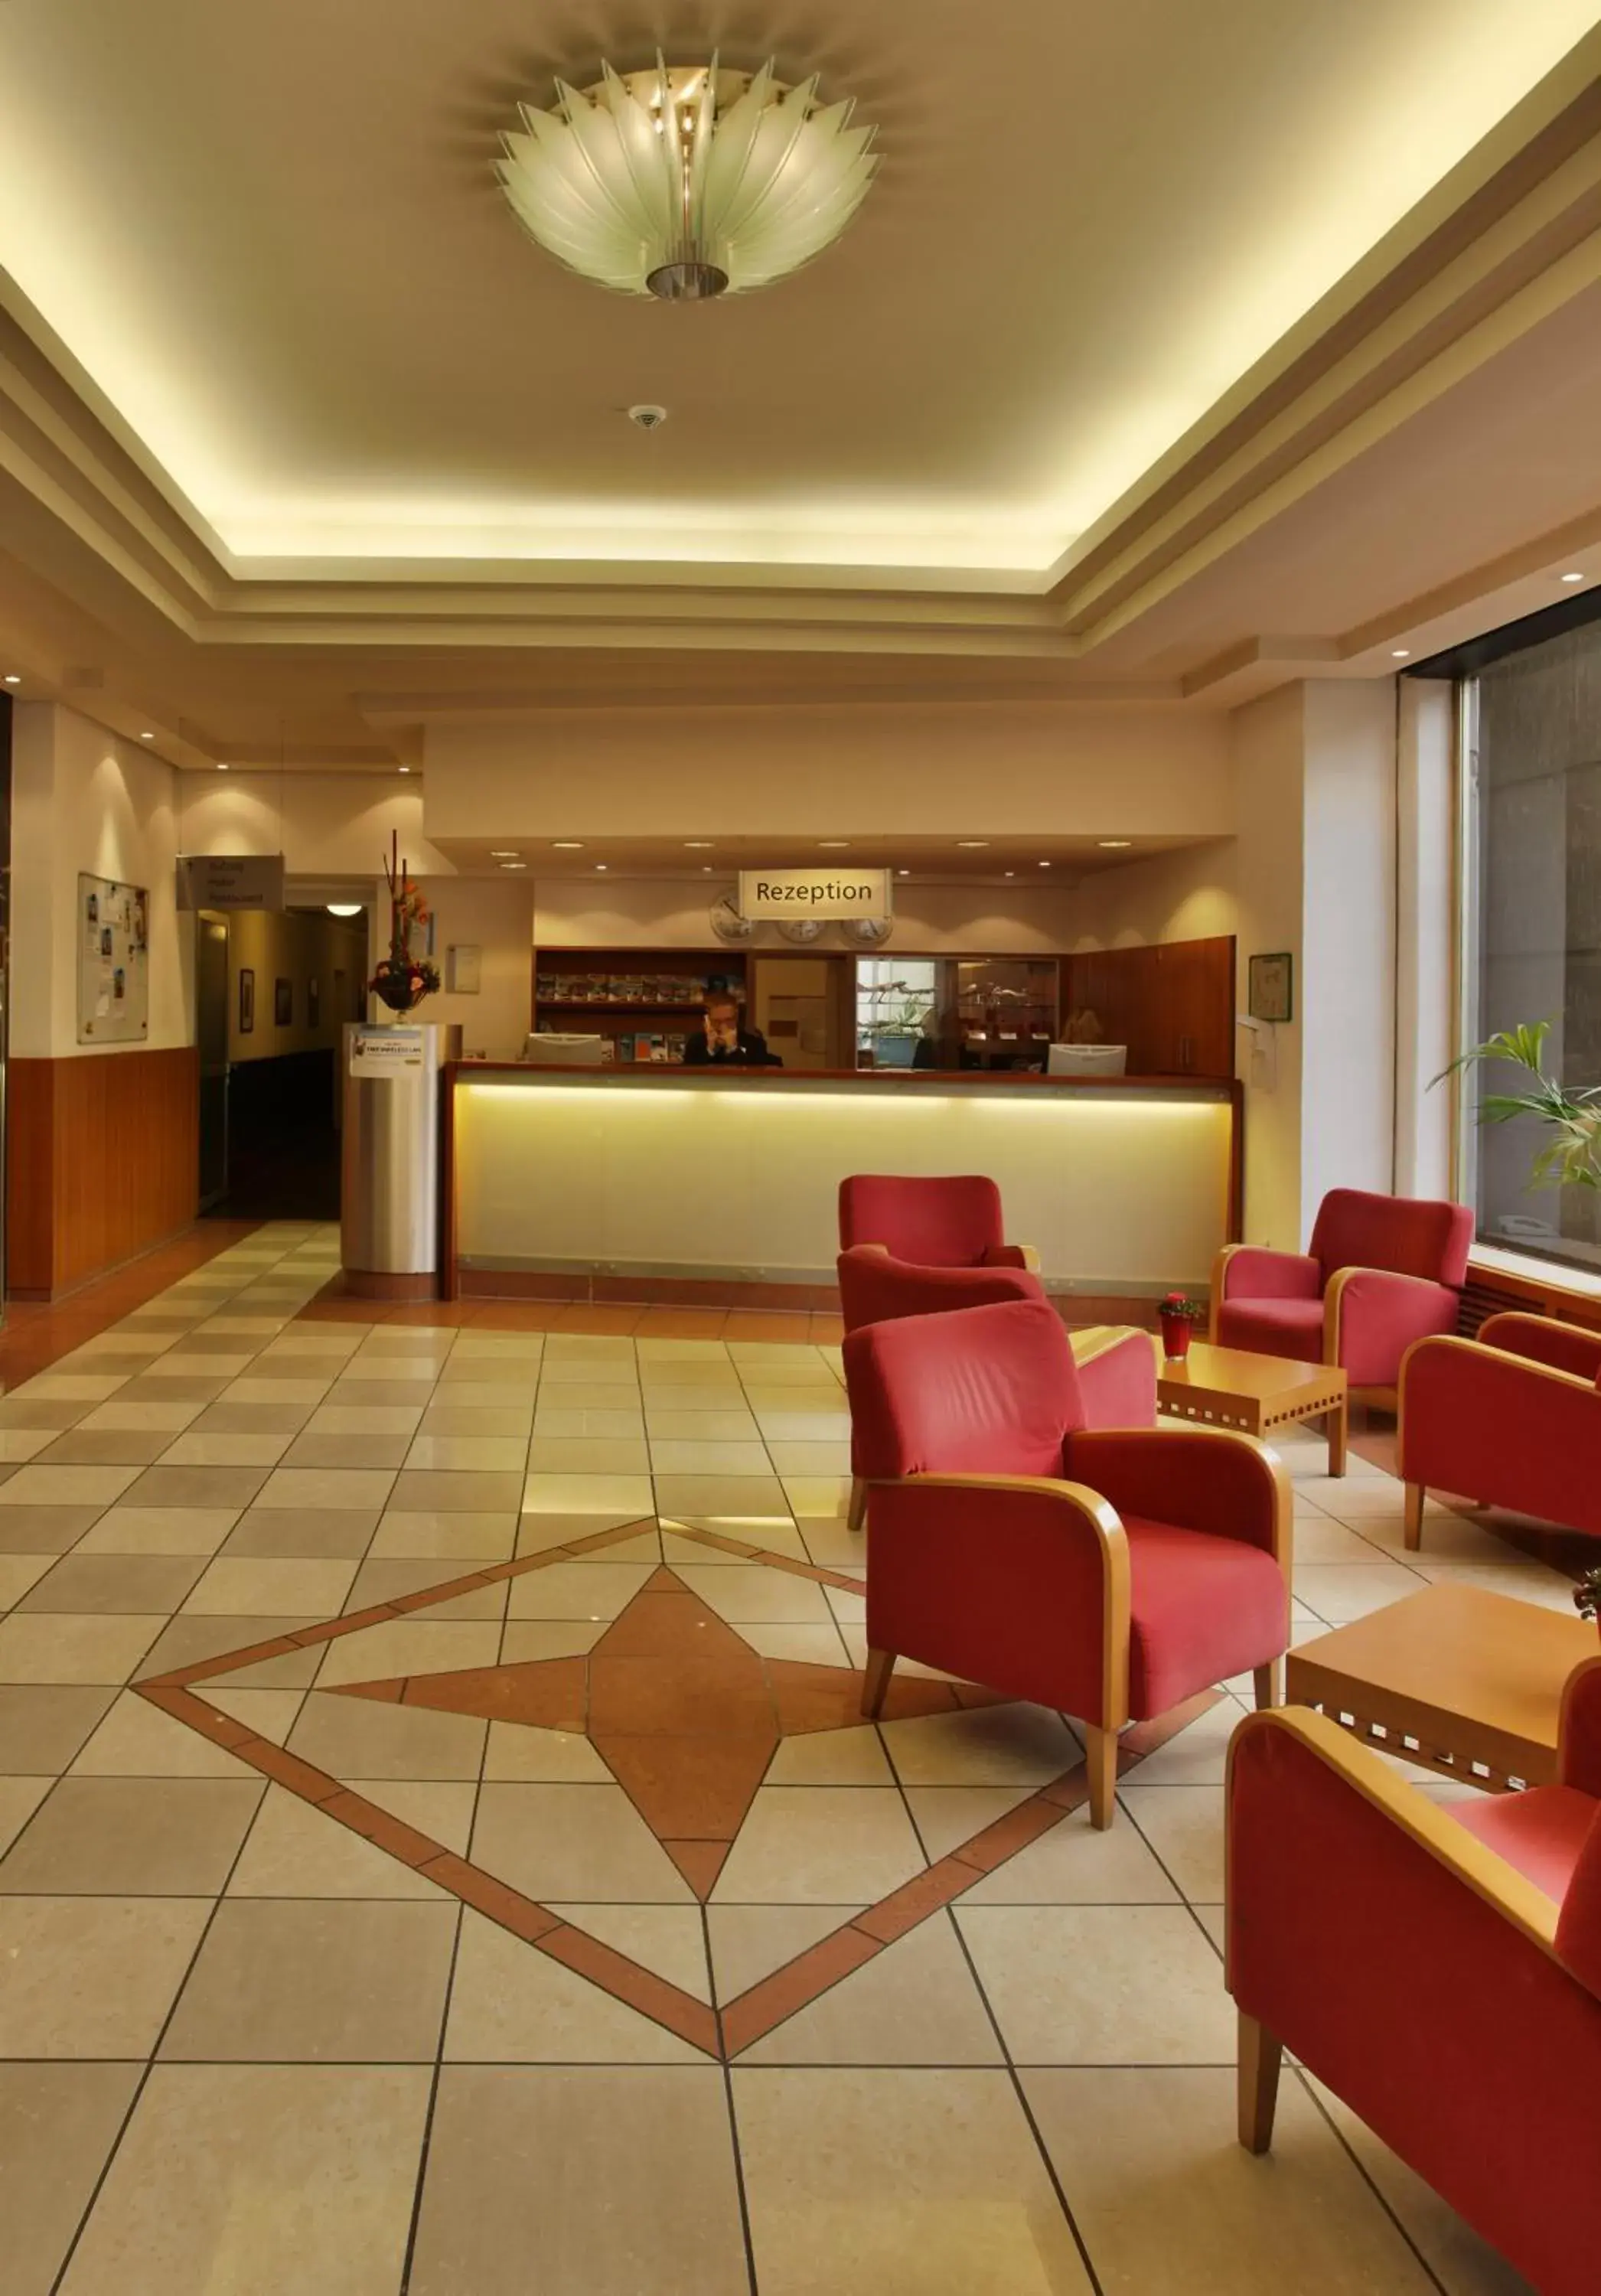 Lobby or reception, Lobby/Reception in Best Western Hotel Frankfurt Airport Neu-Isenburg